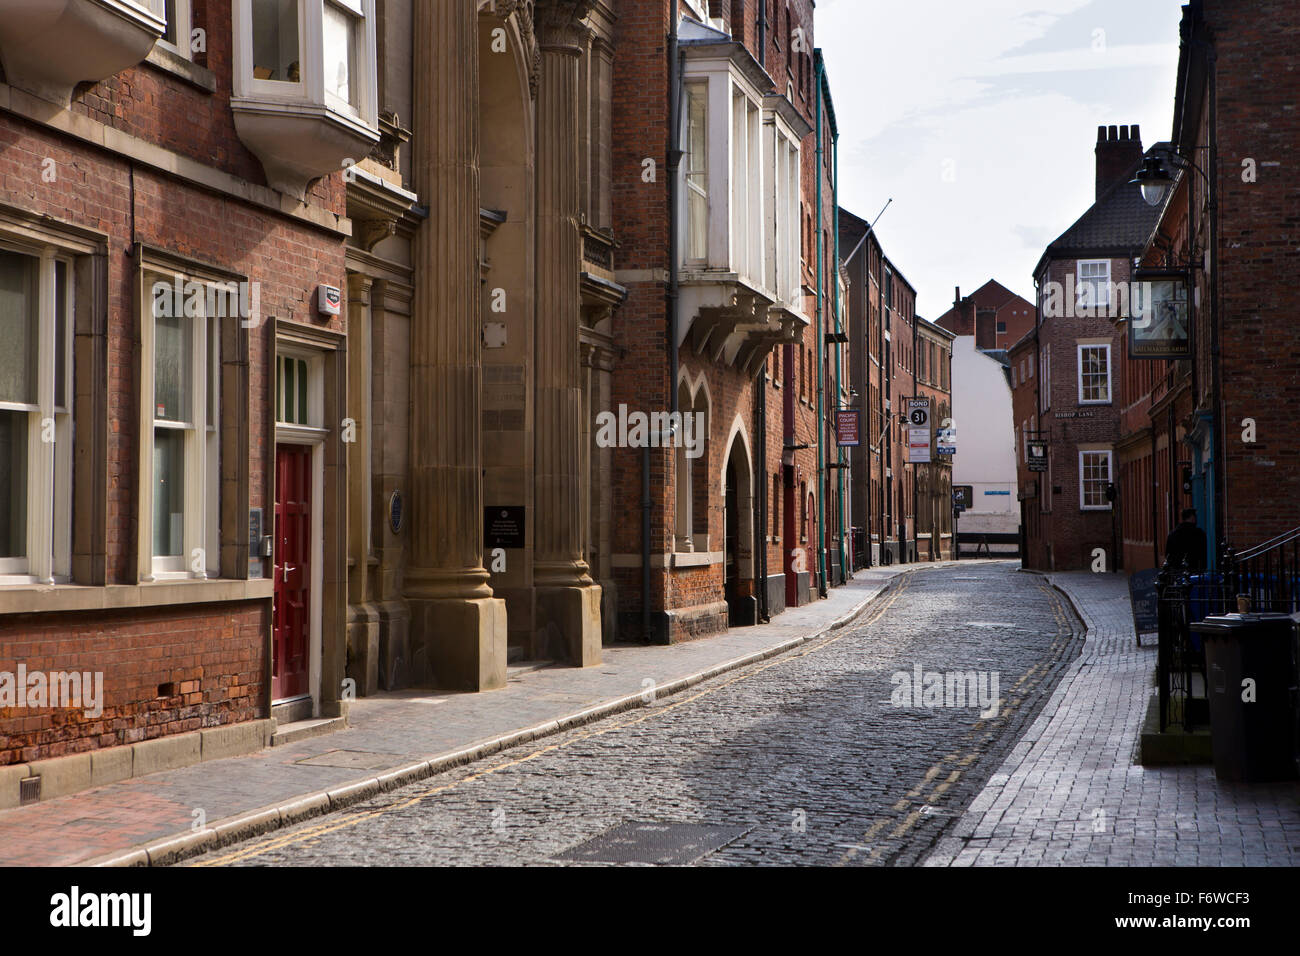 Reino Unido, Inglaterra, Yorkshire, Hull, High Street, calle angosta forro de edificios históricos en el casco antiguo Foto de stock